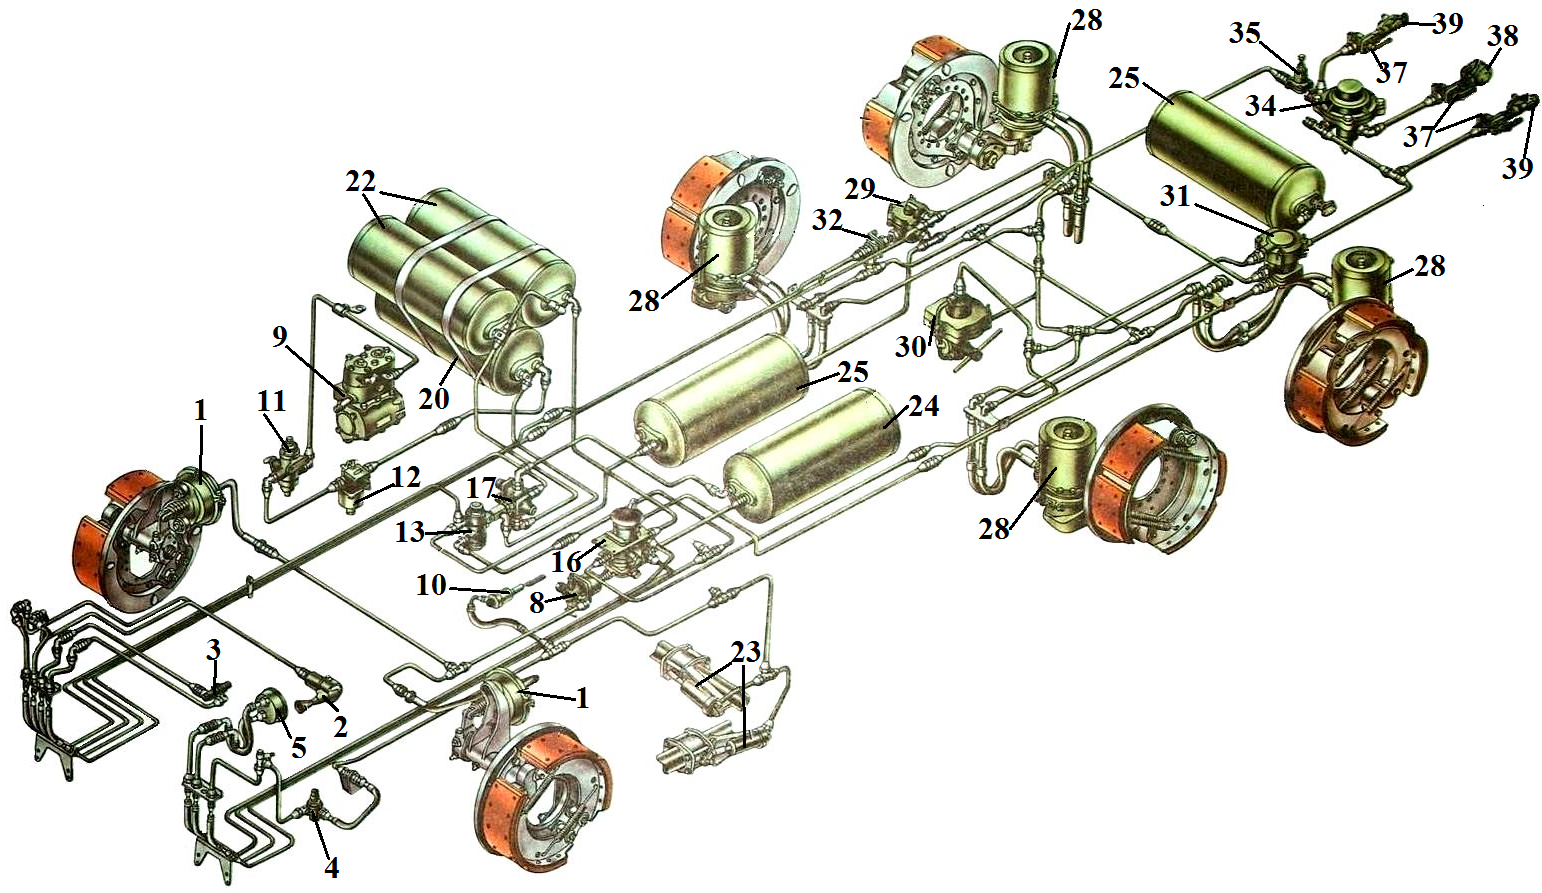 5.3.2 тормозные системы автомобилей камаз / 5.3 тормозные системы / 5 механизмы управления большегрузных автомобилей / книга: автопрактикум. часть 3. ходовая часть и механизмы управления большегрузных